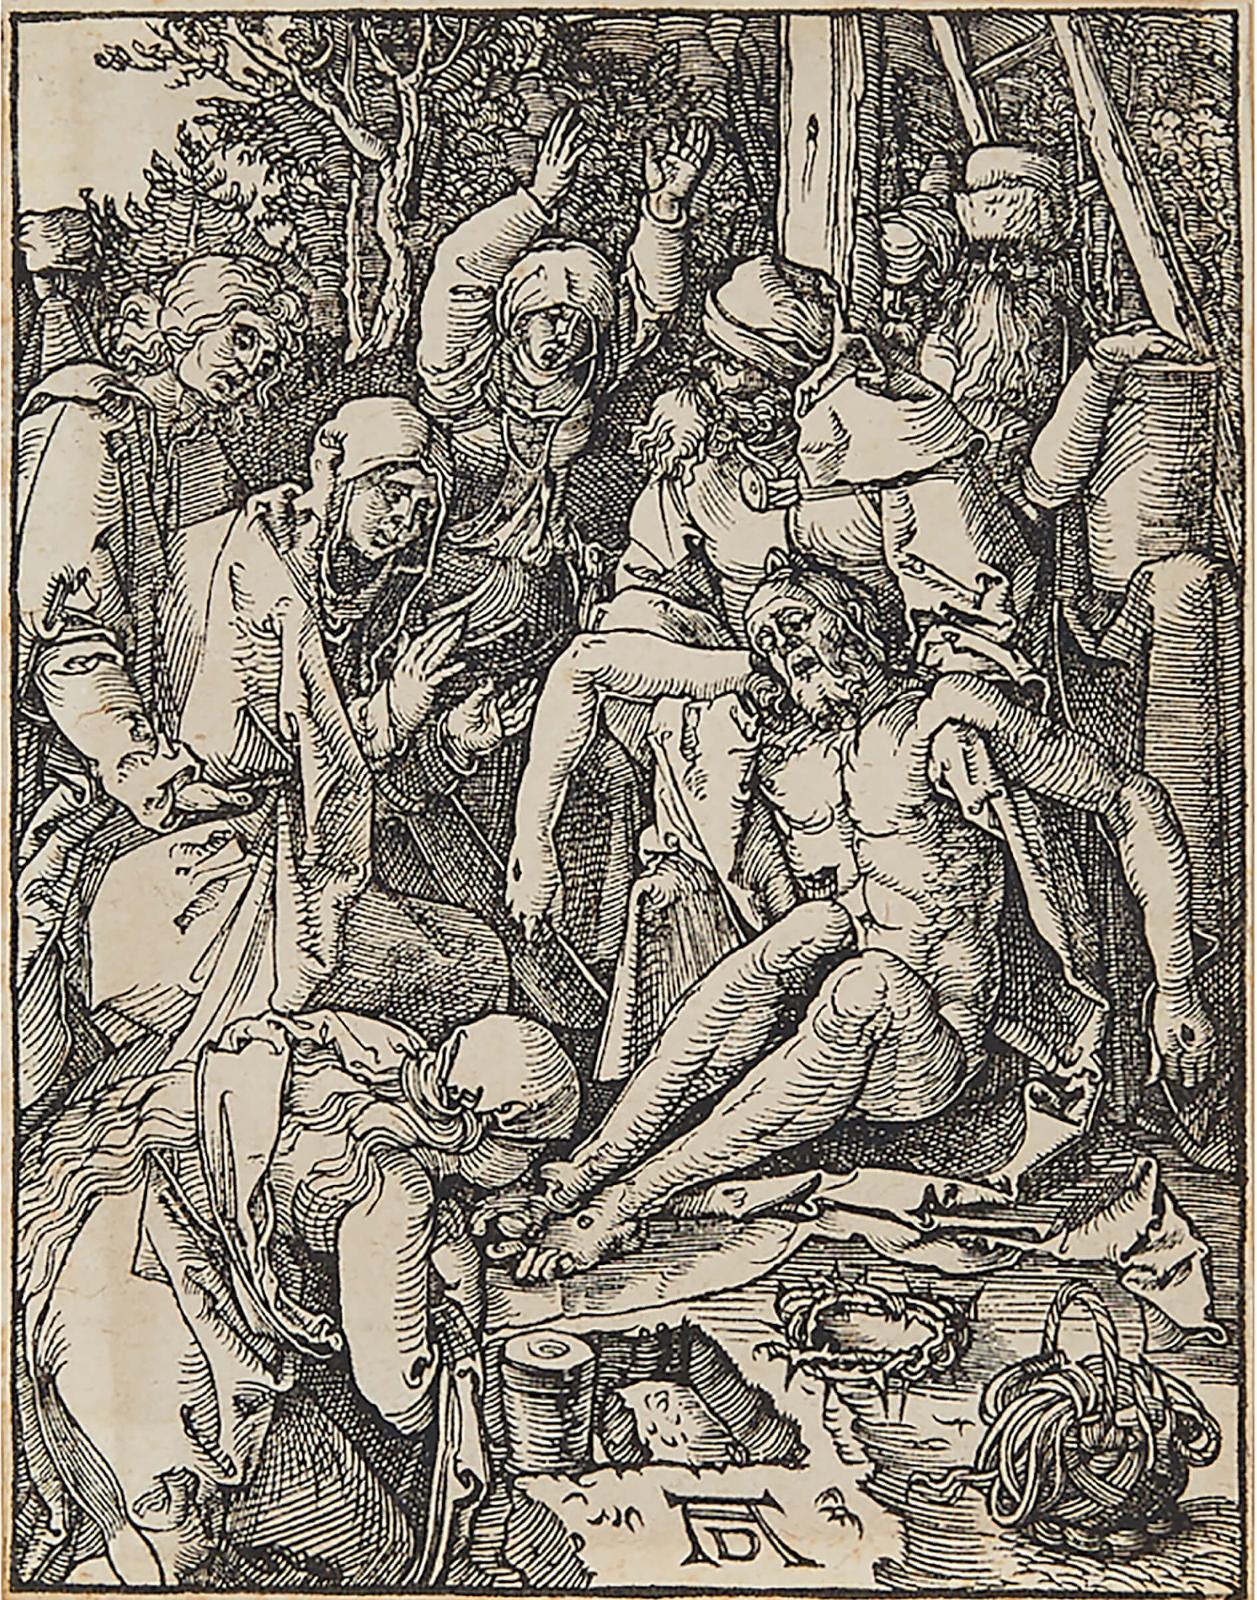 Albrecht Dürer (1471-1528) - The Lamentation, Circa 1509-11, [bartsch 43; Meder 152]